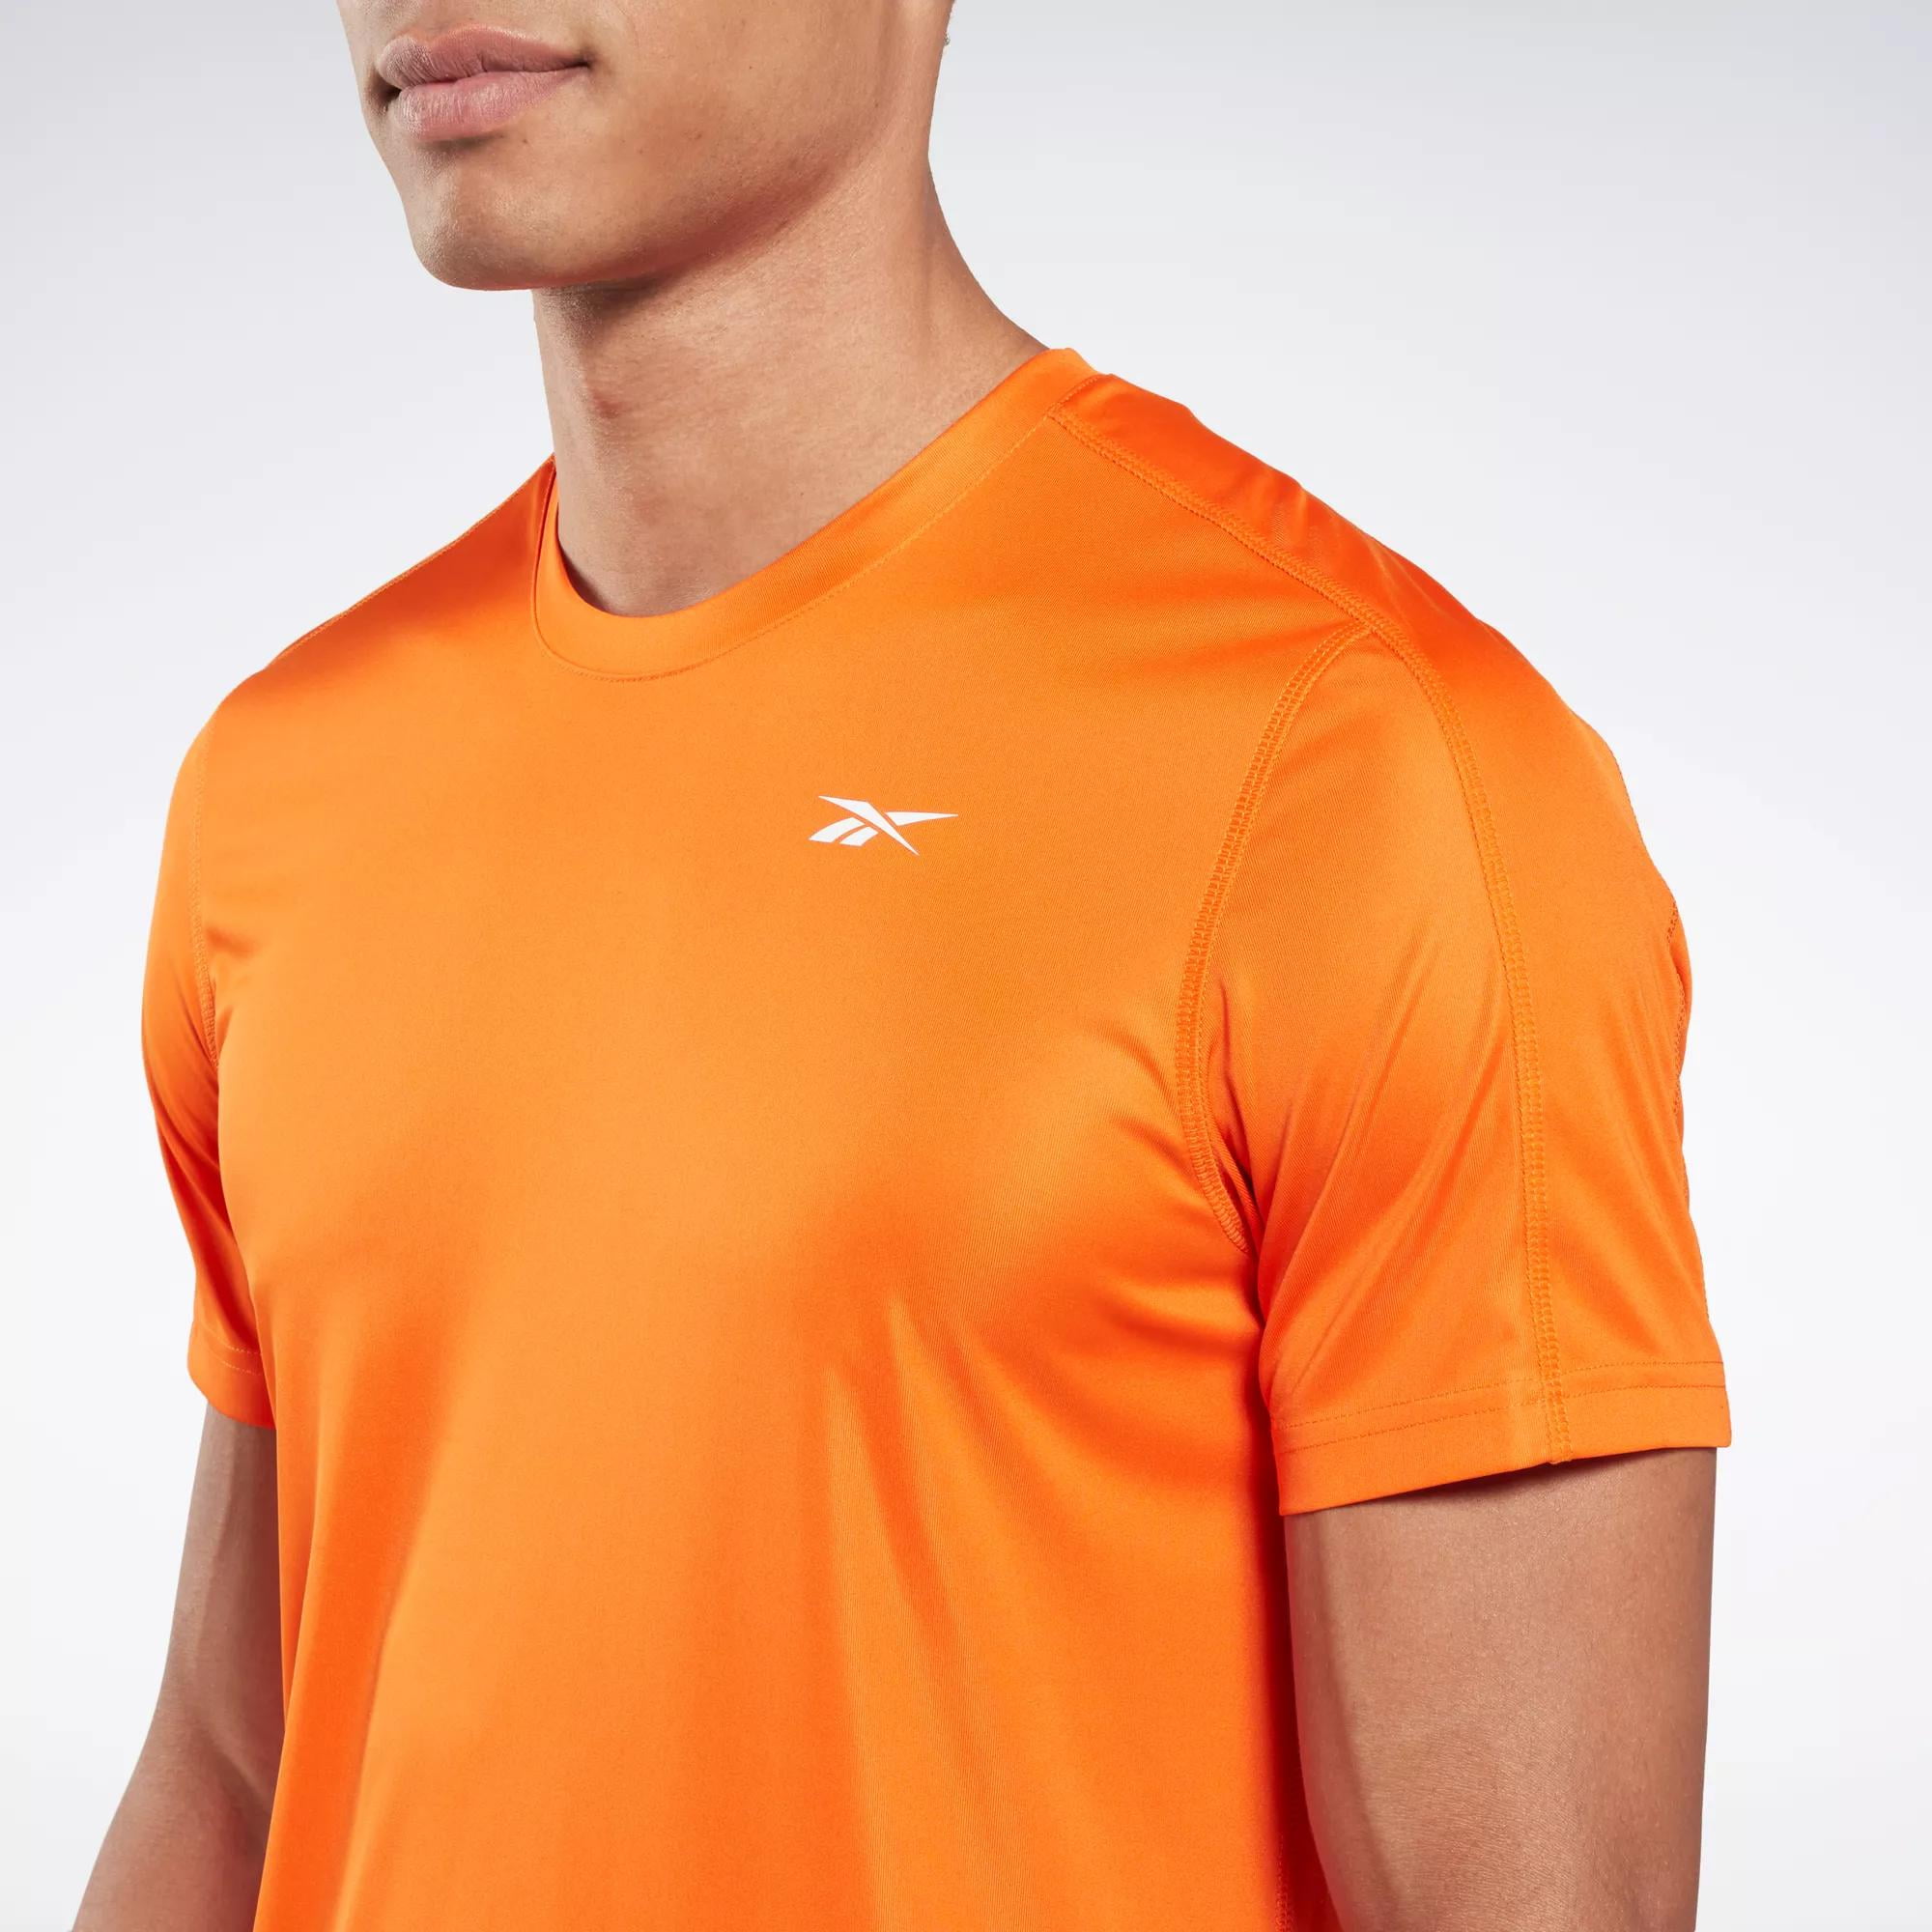 Reebok Tee-Shirt Fitted Top M vêtement running homme